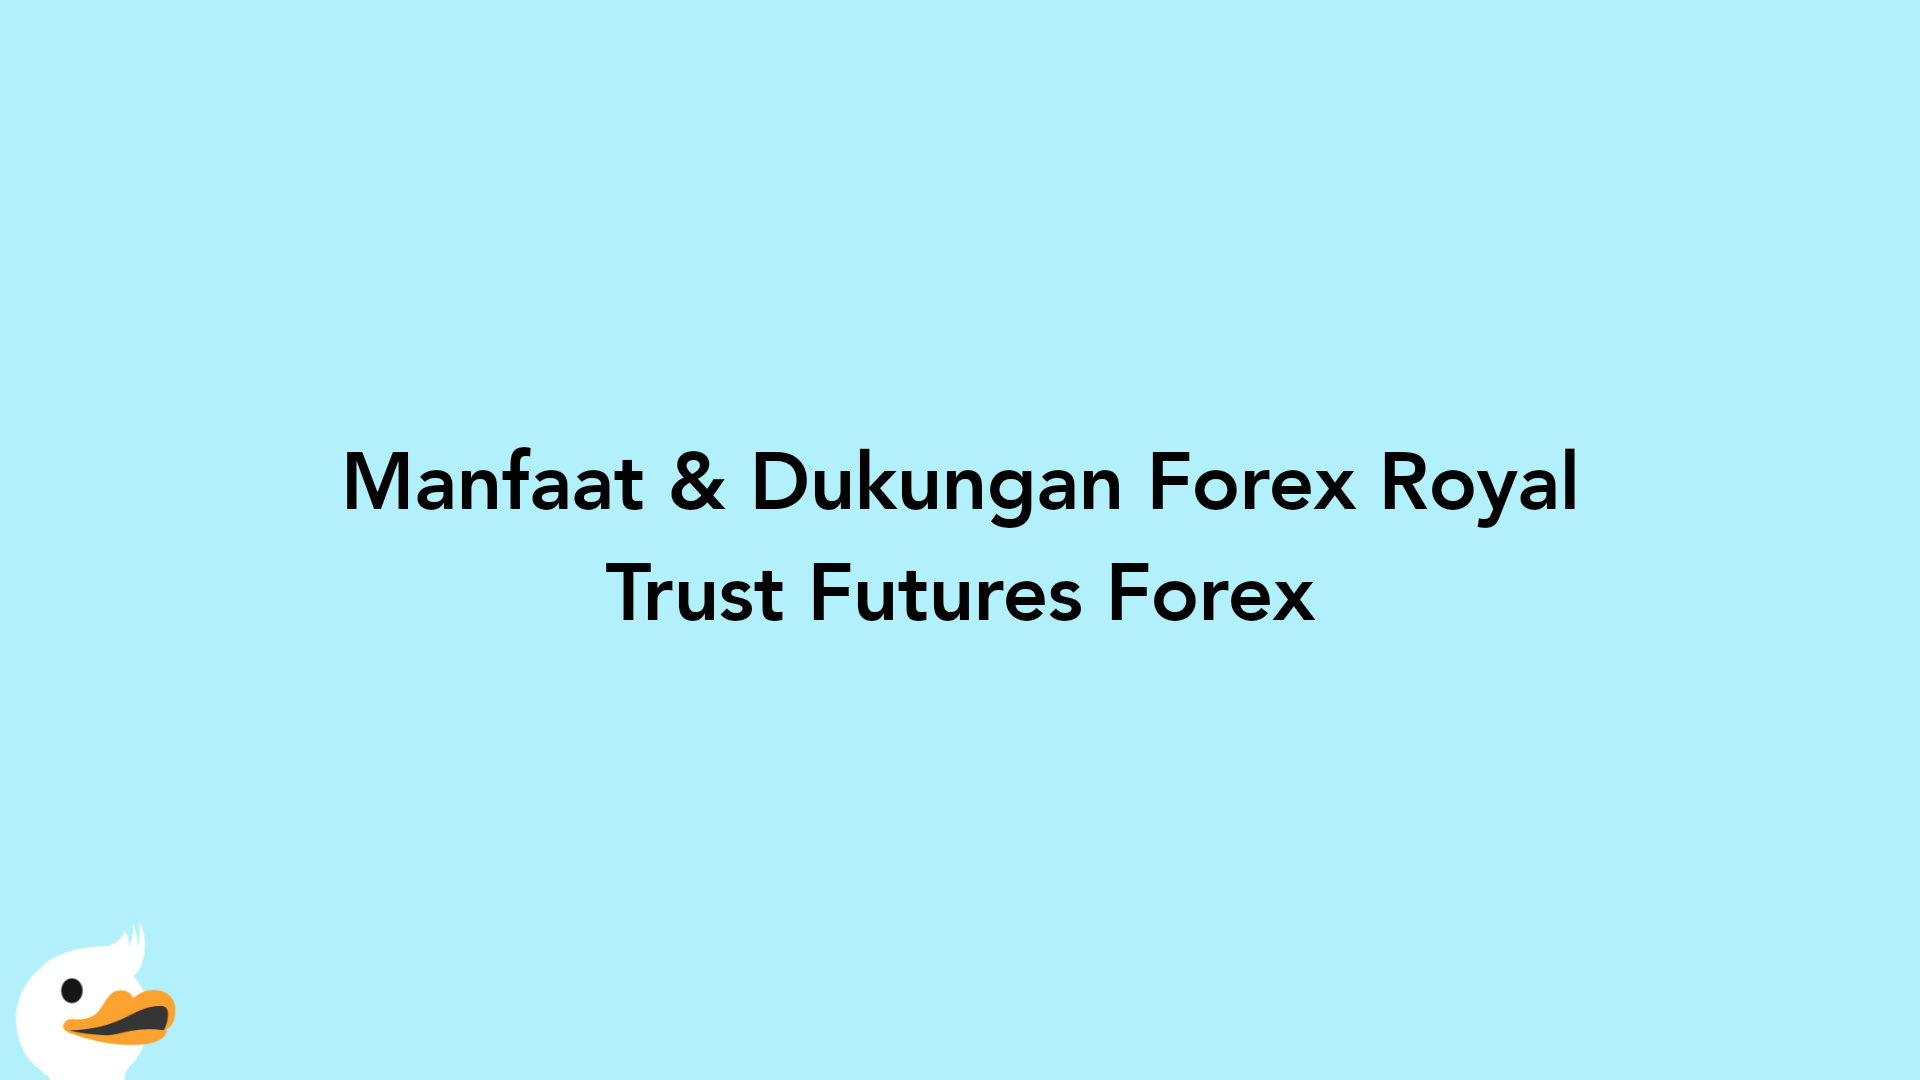 Manfaat & Dukungan Forex Royal Trust Futures Forex